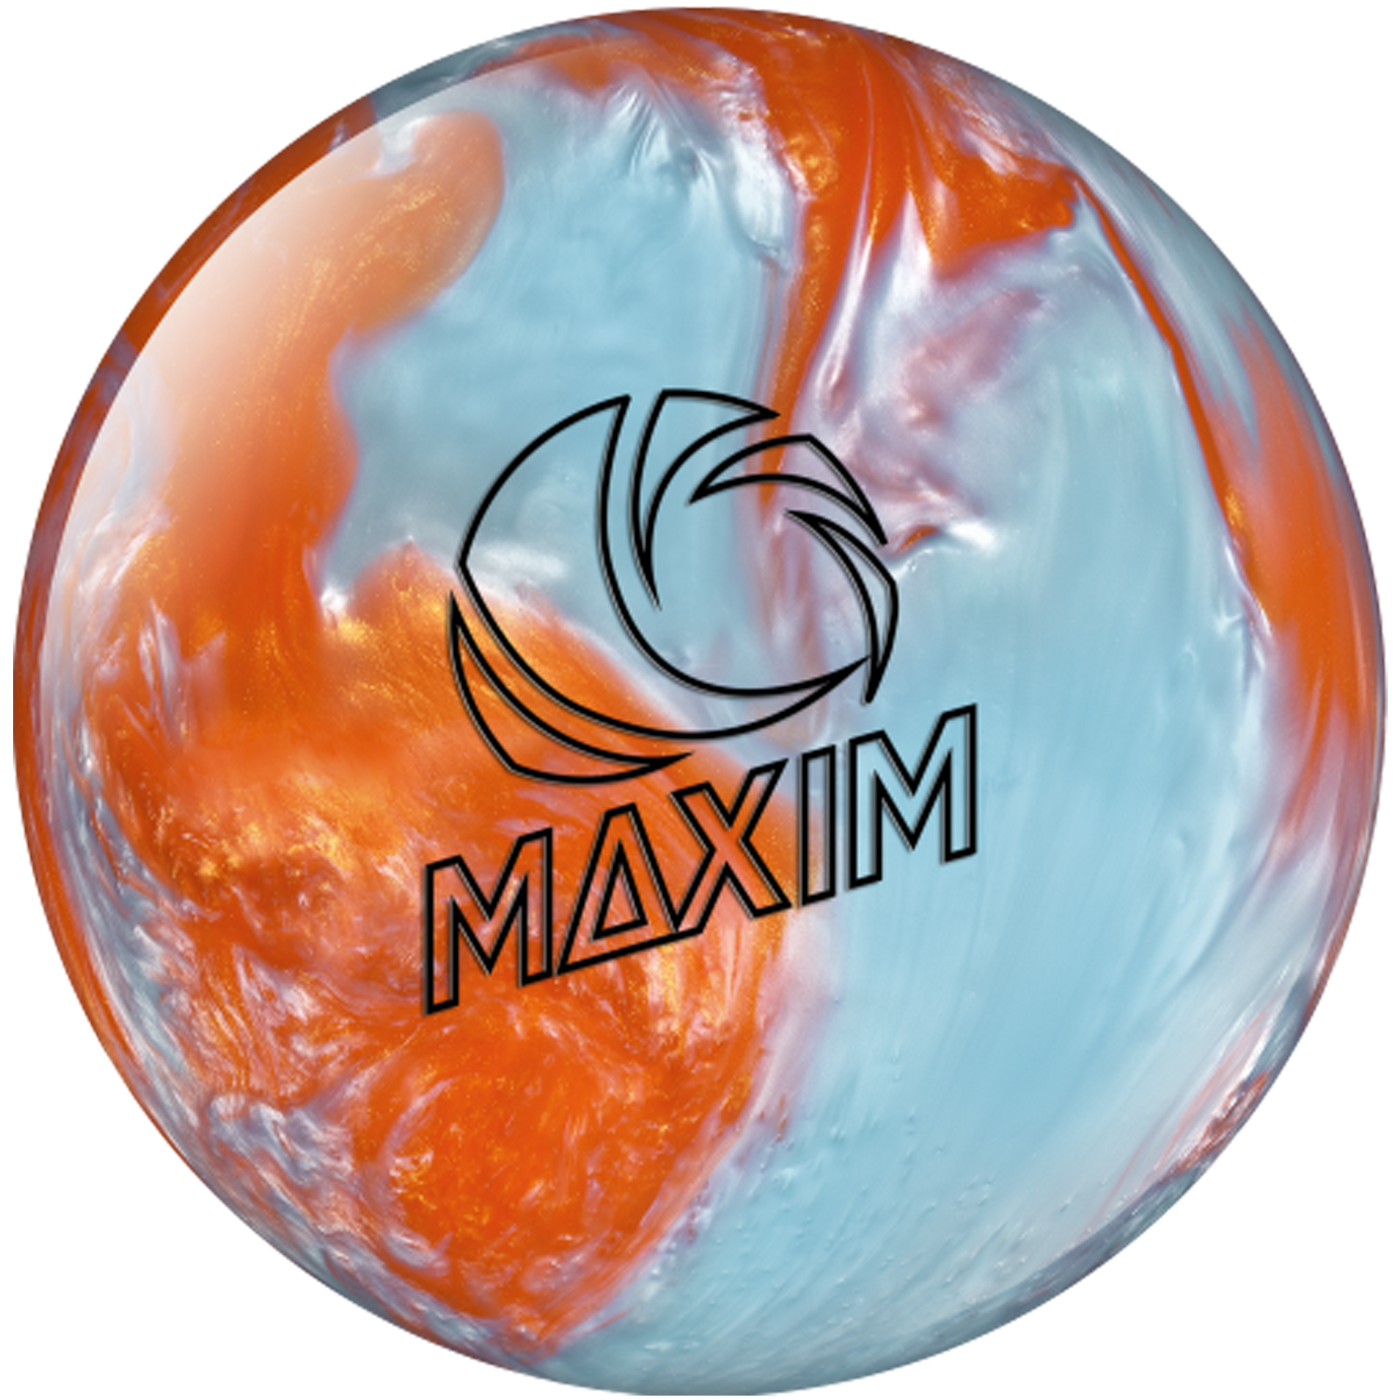 Maxim - Orange/Crystal Bowling Ball